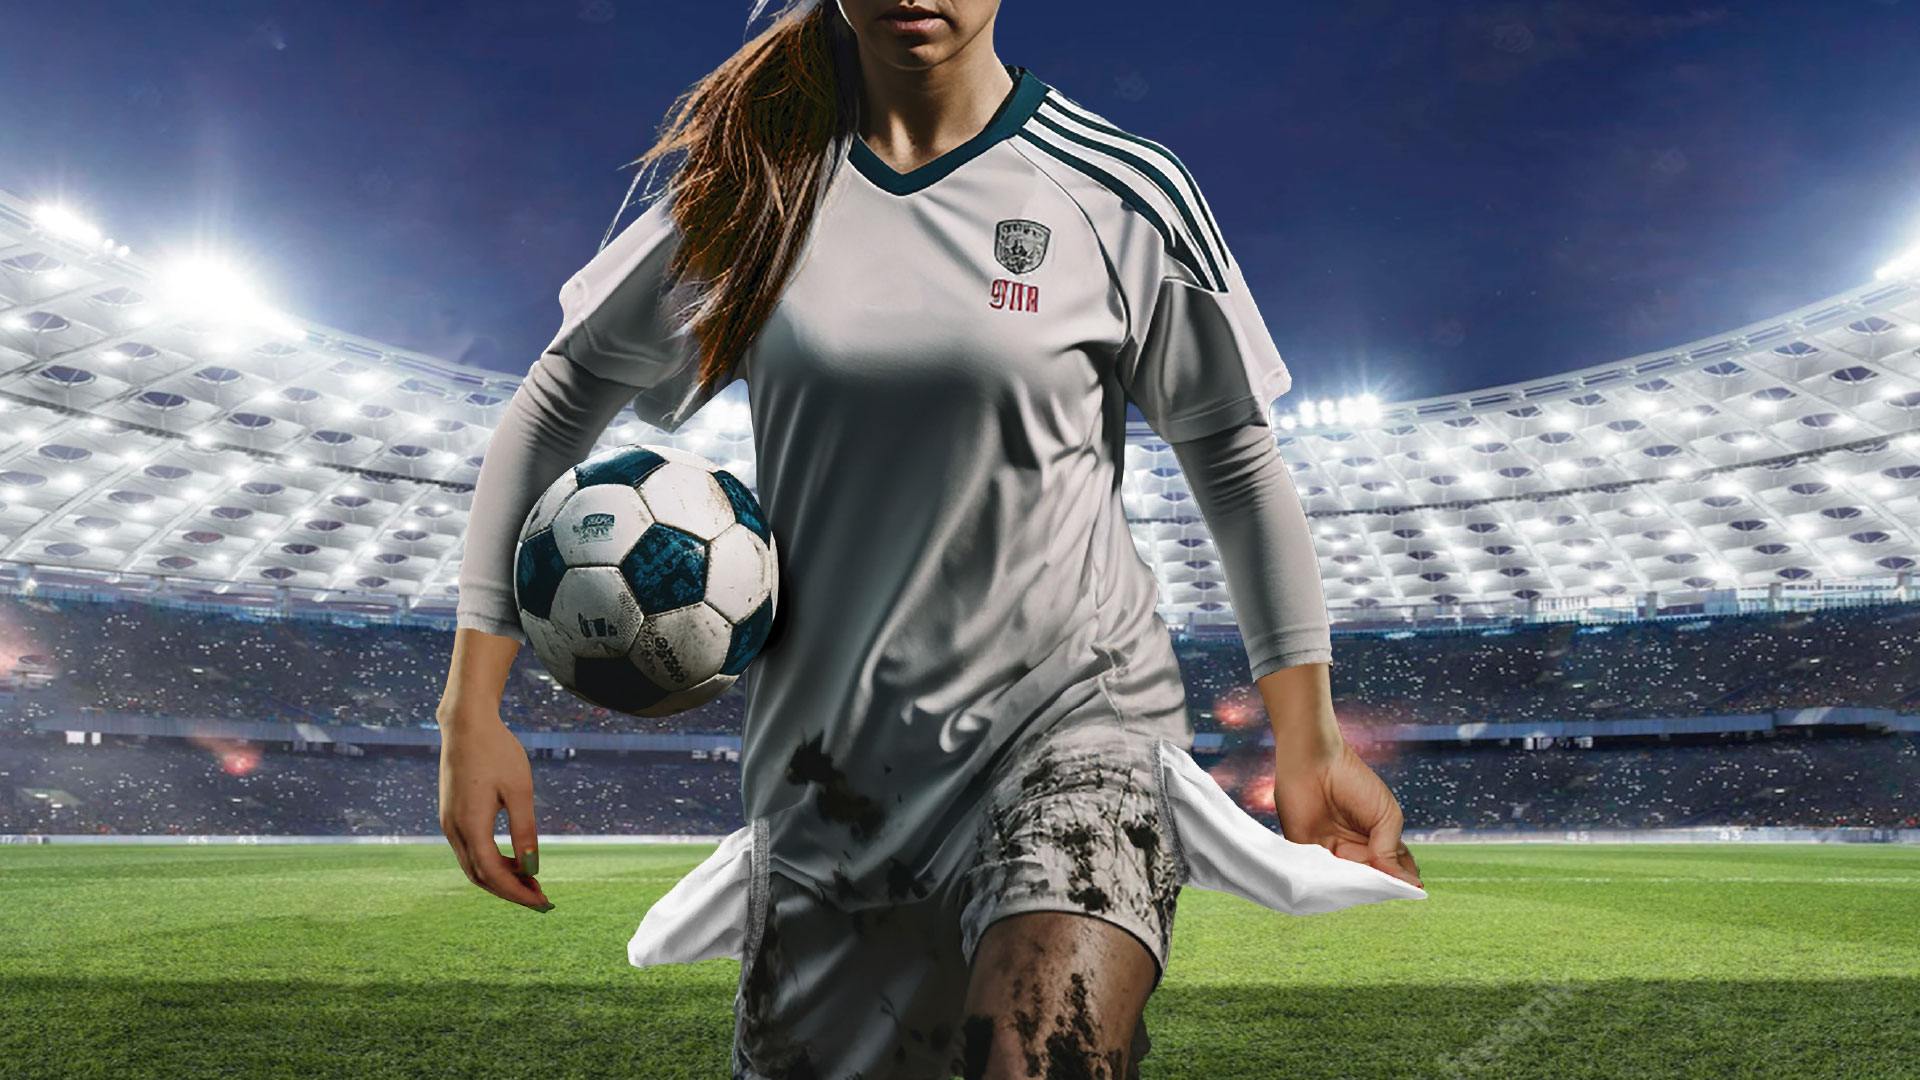 Participación Femenina en Fútbol Amateur: Perspectiva del Organizador de Torneo